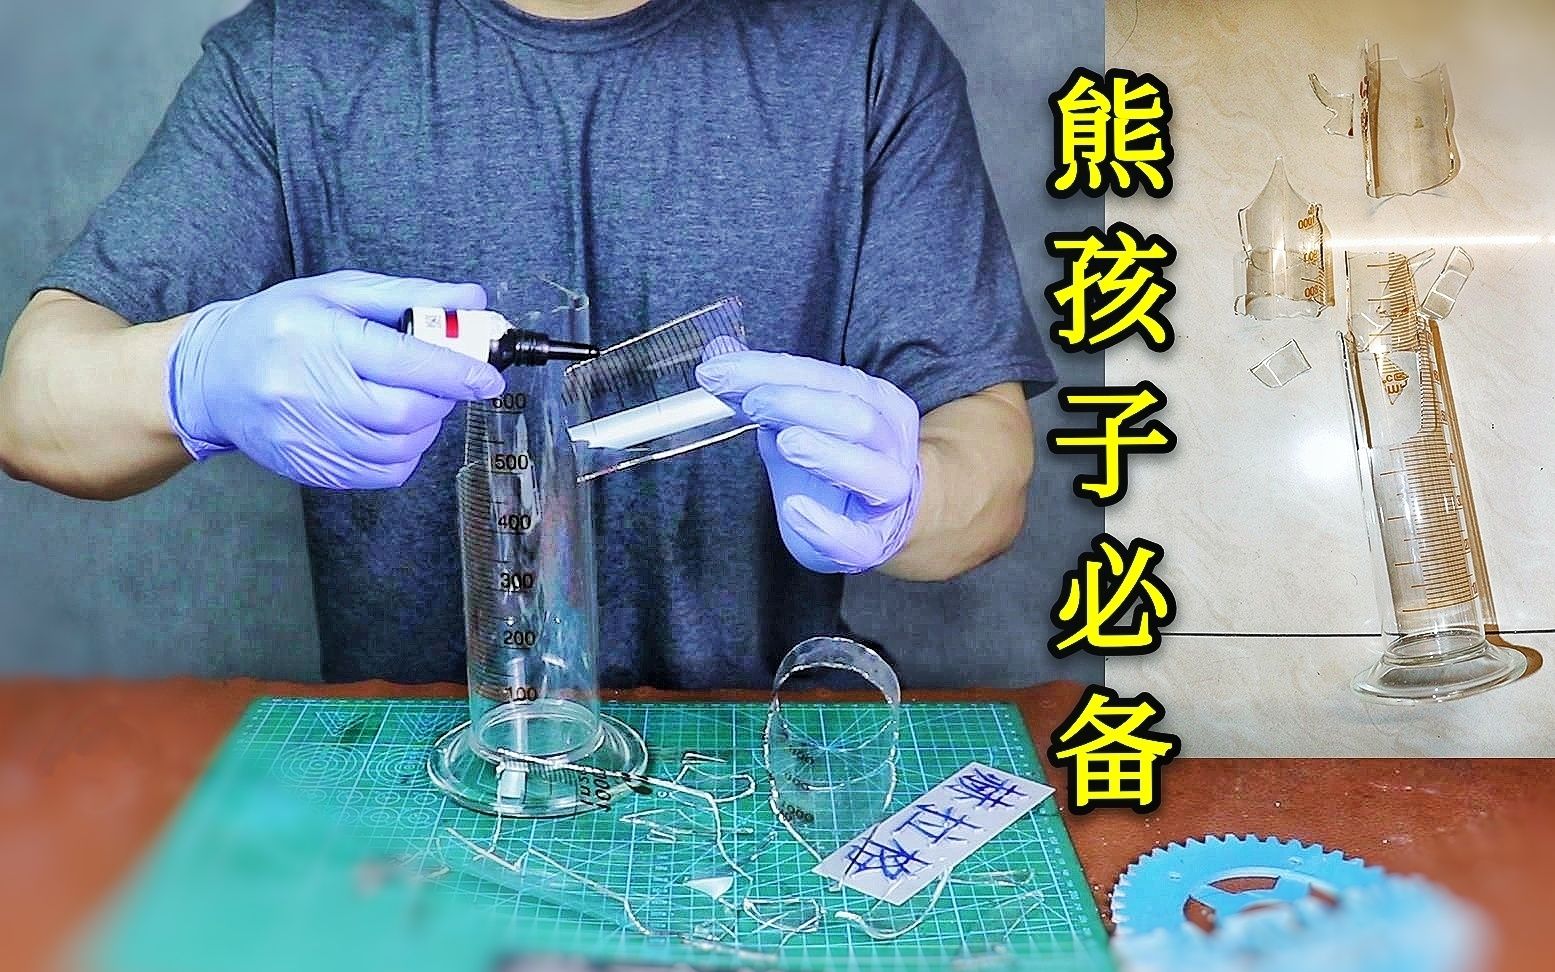 【熊孩子必备】用焊接胶水修复一个破碎的玻璃量筒